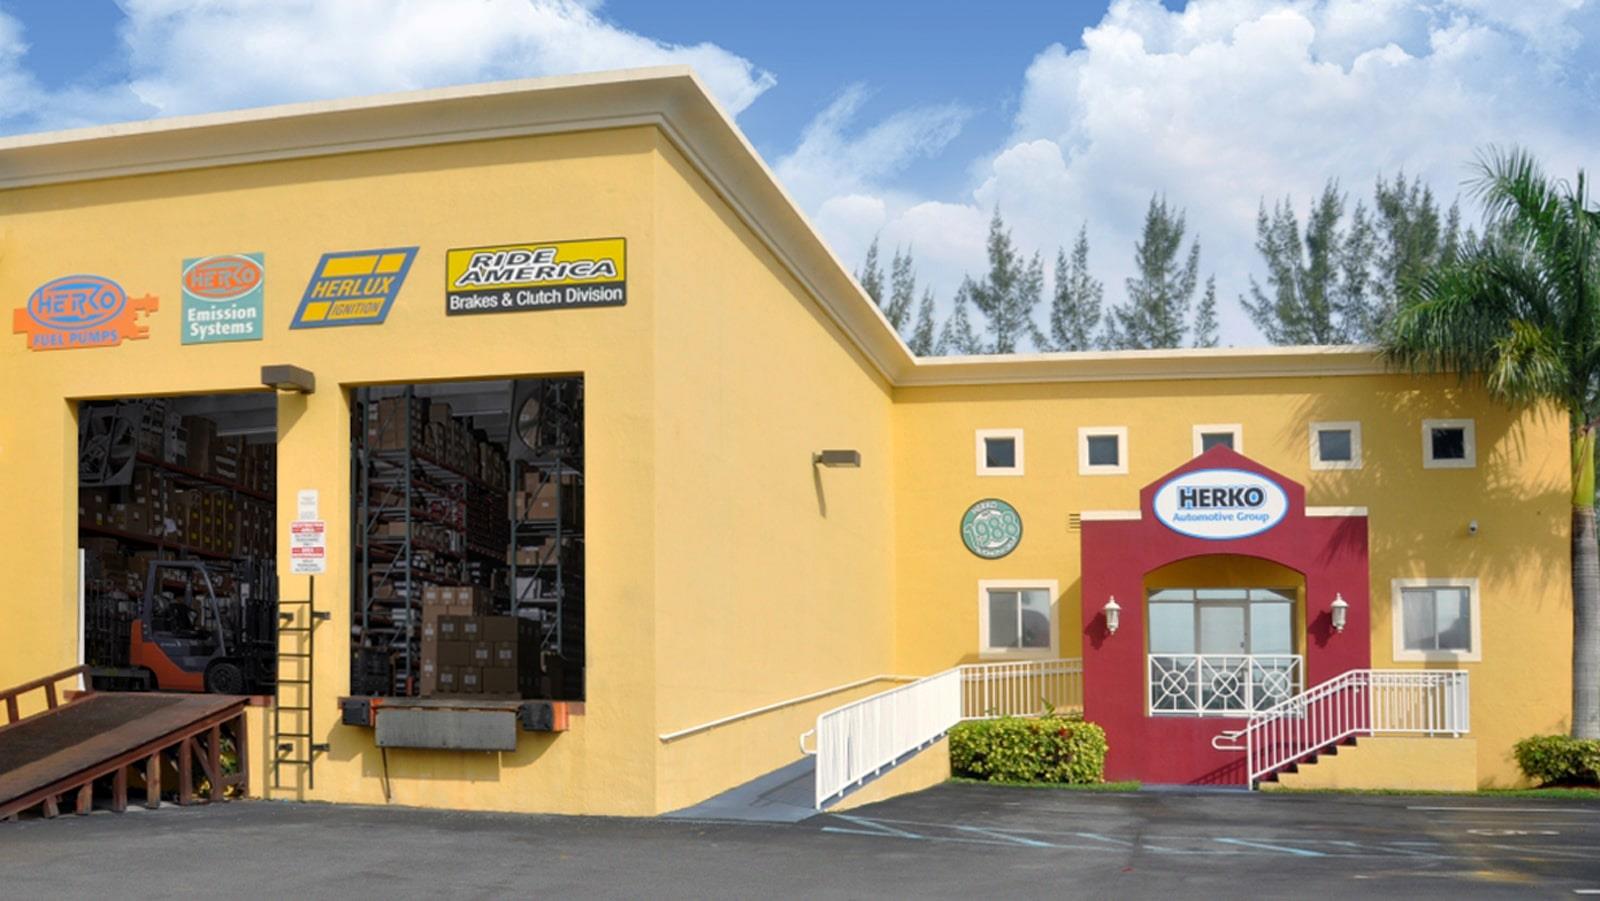 Reservedelsfirmaet Herko´s bygning og hovedindgang i Florida